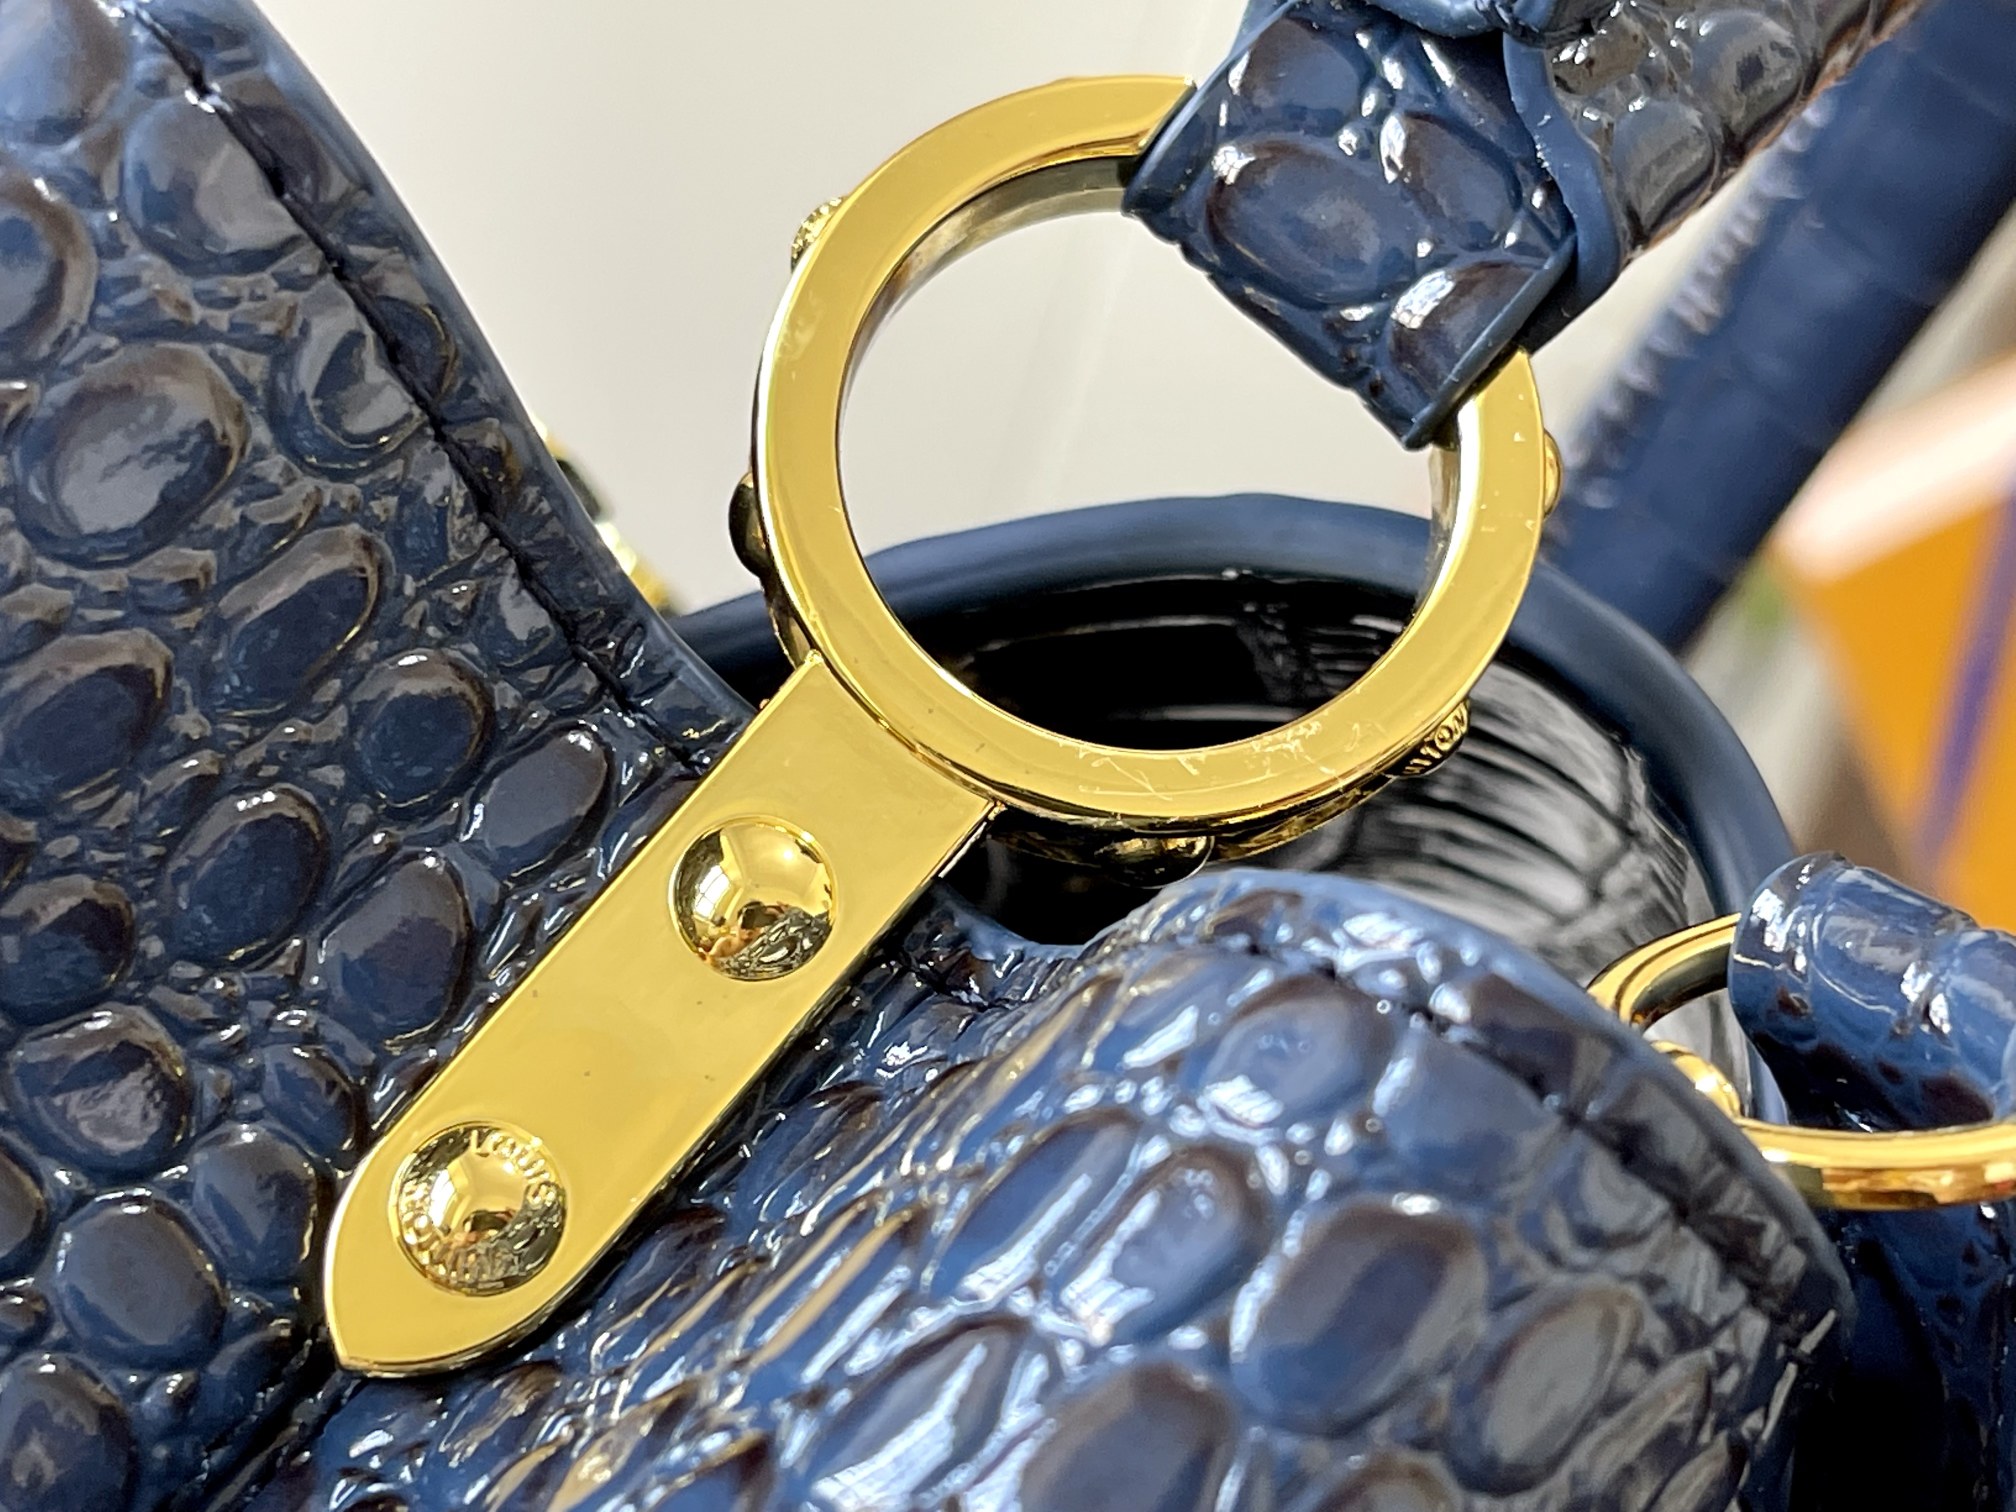 升级版N92967/M93419复古蓝色鳄鱼纹此款珍贵的CaPucines中号手袋由鳄鱼皮纹经上高光处理